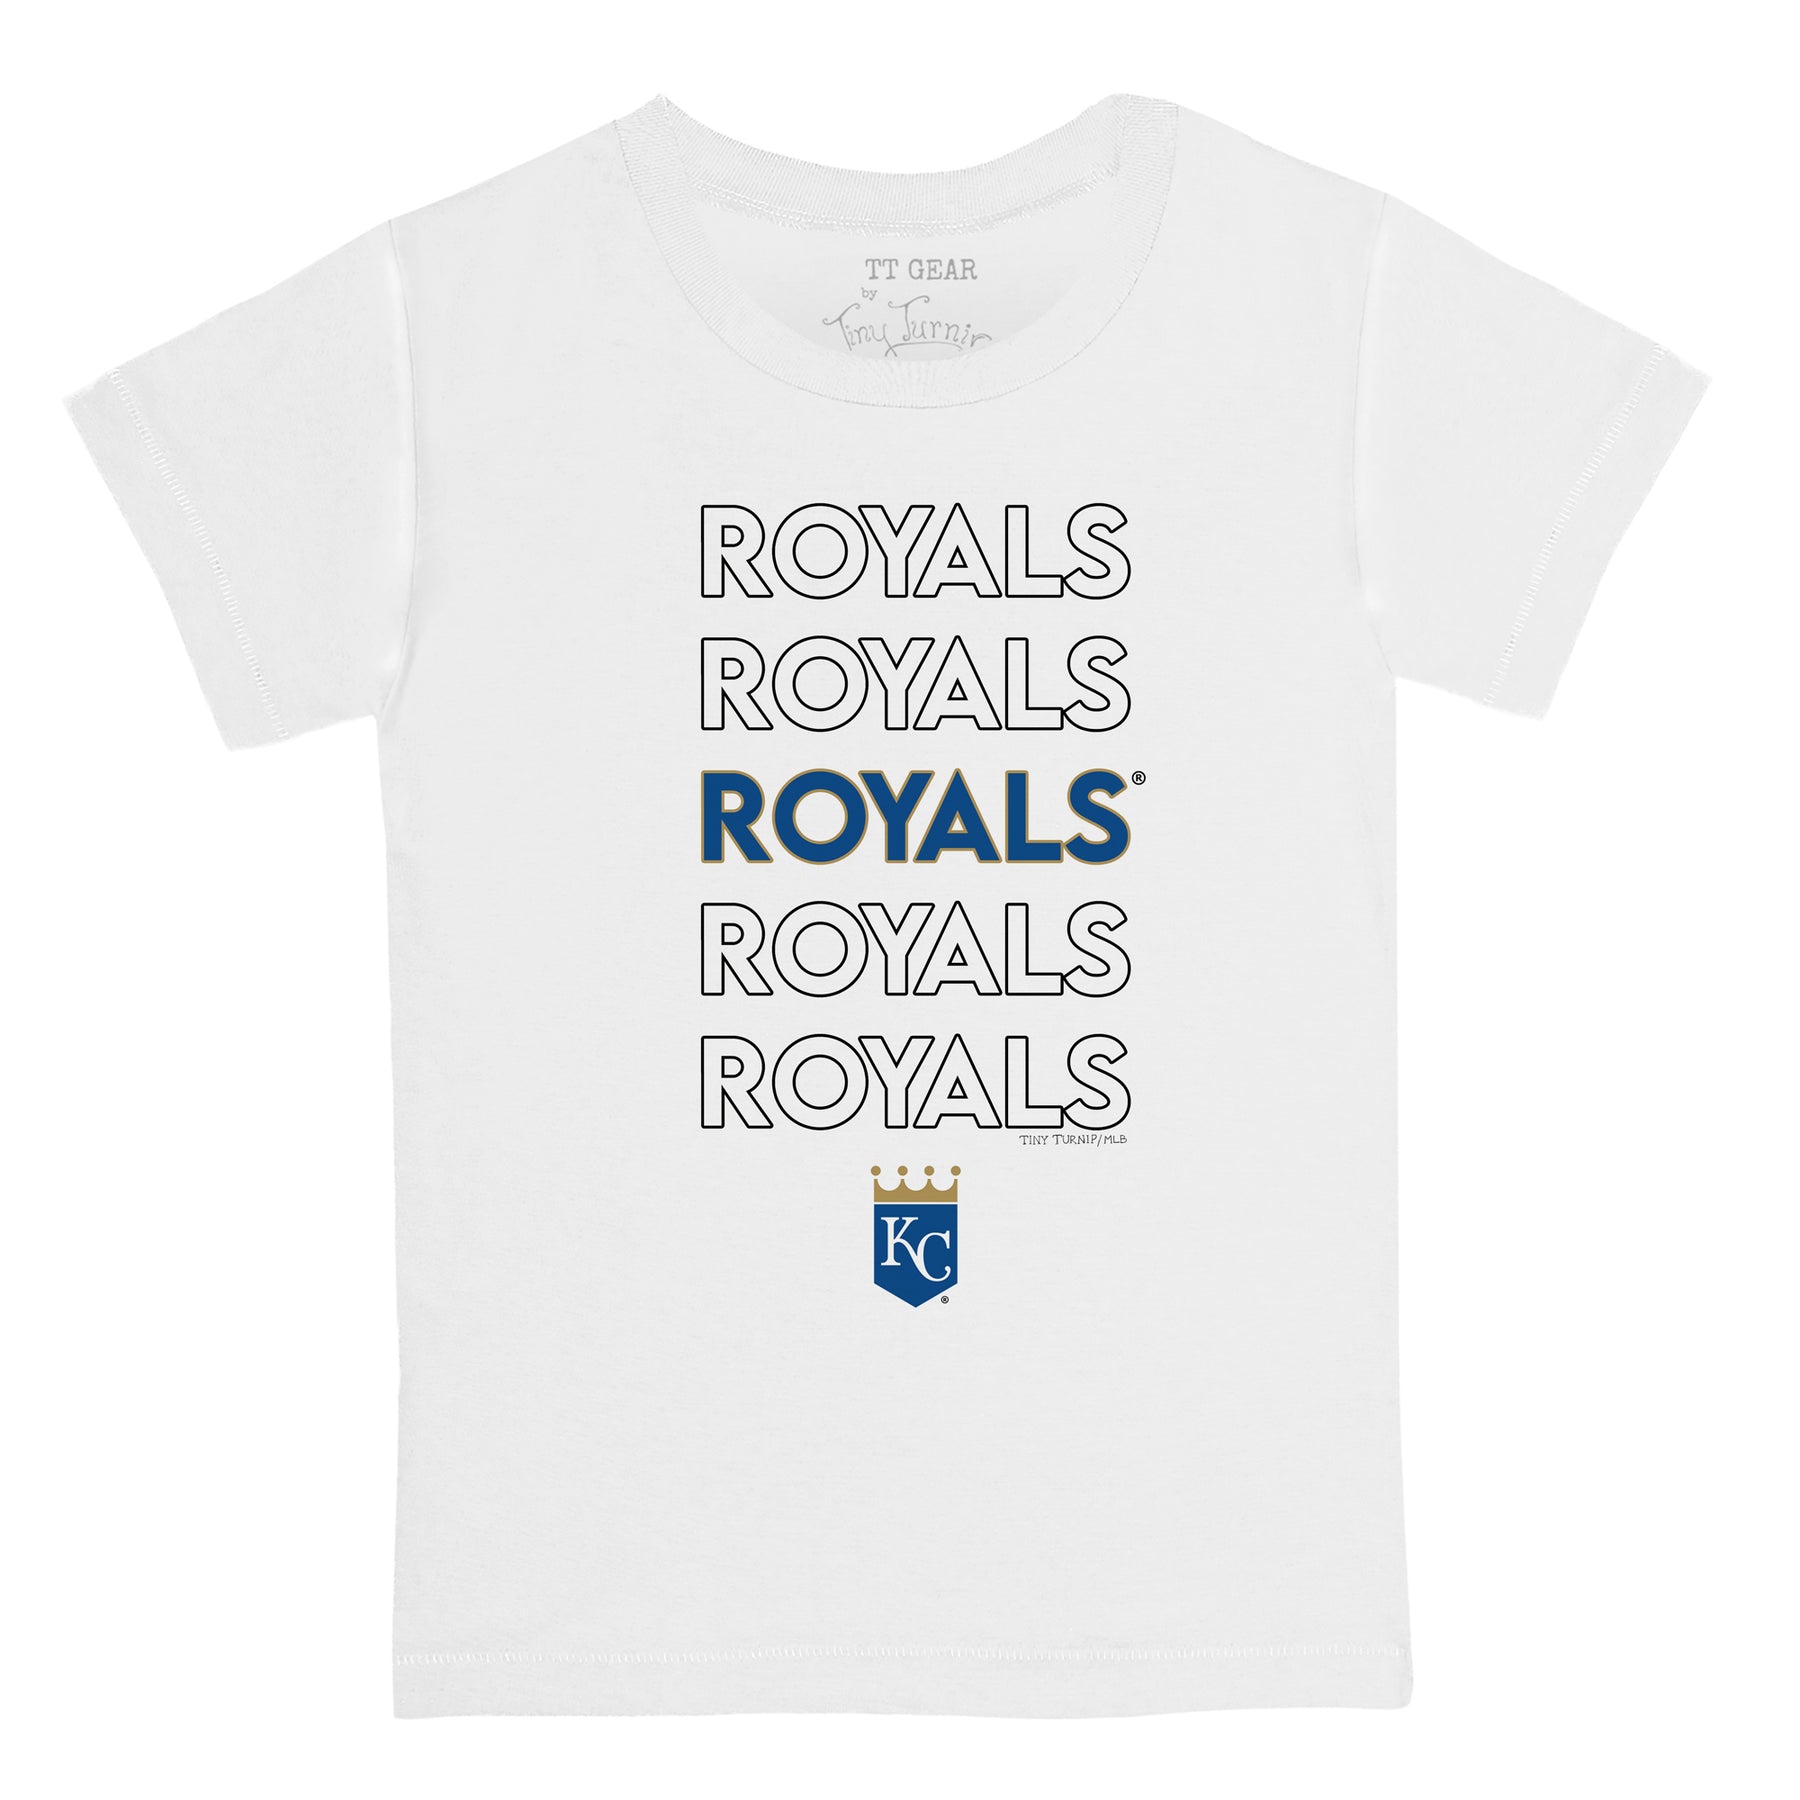 Kansas City Royals Stacked Tee Shirt